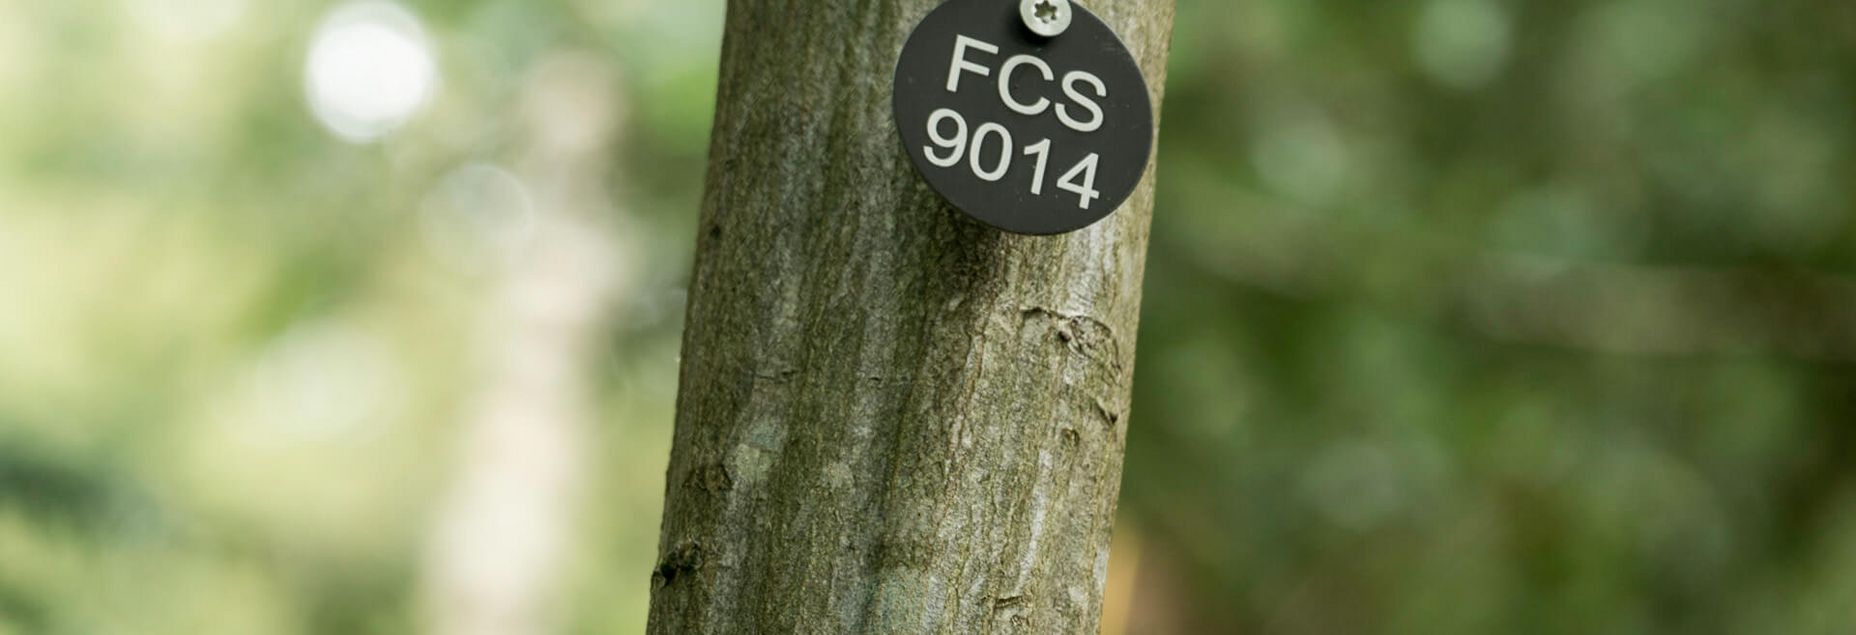 FCS 9014 - Plakette